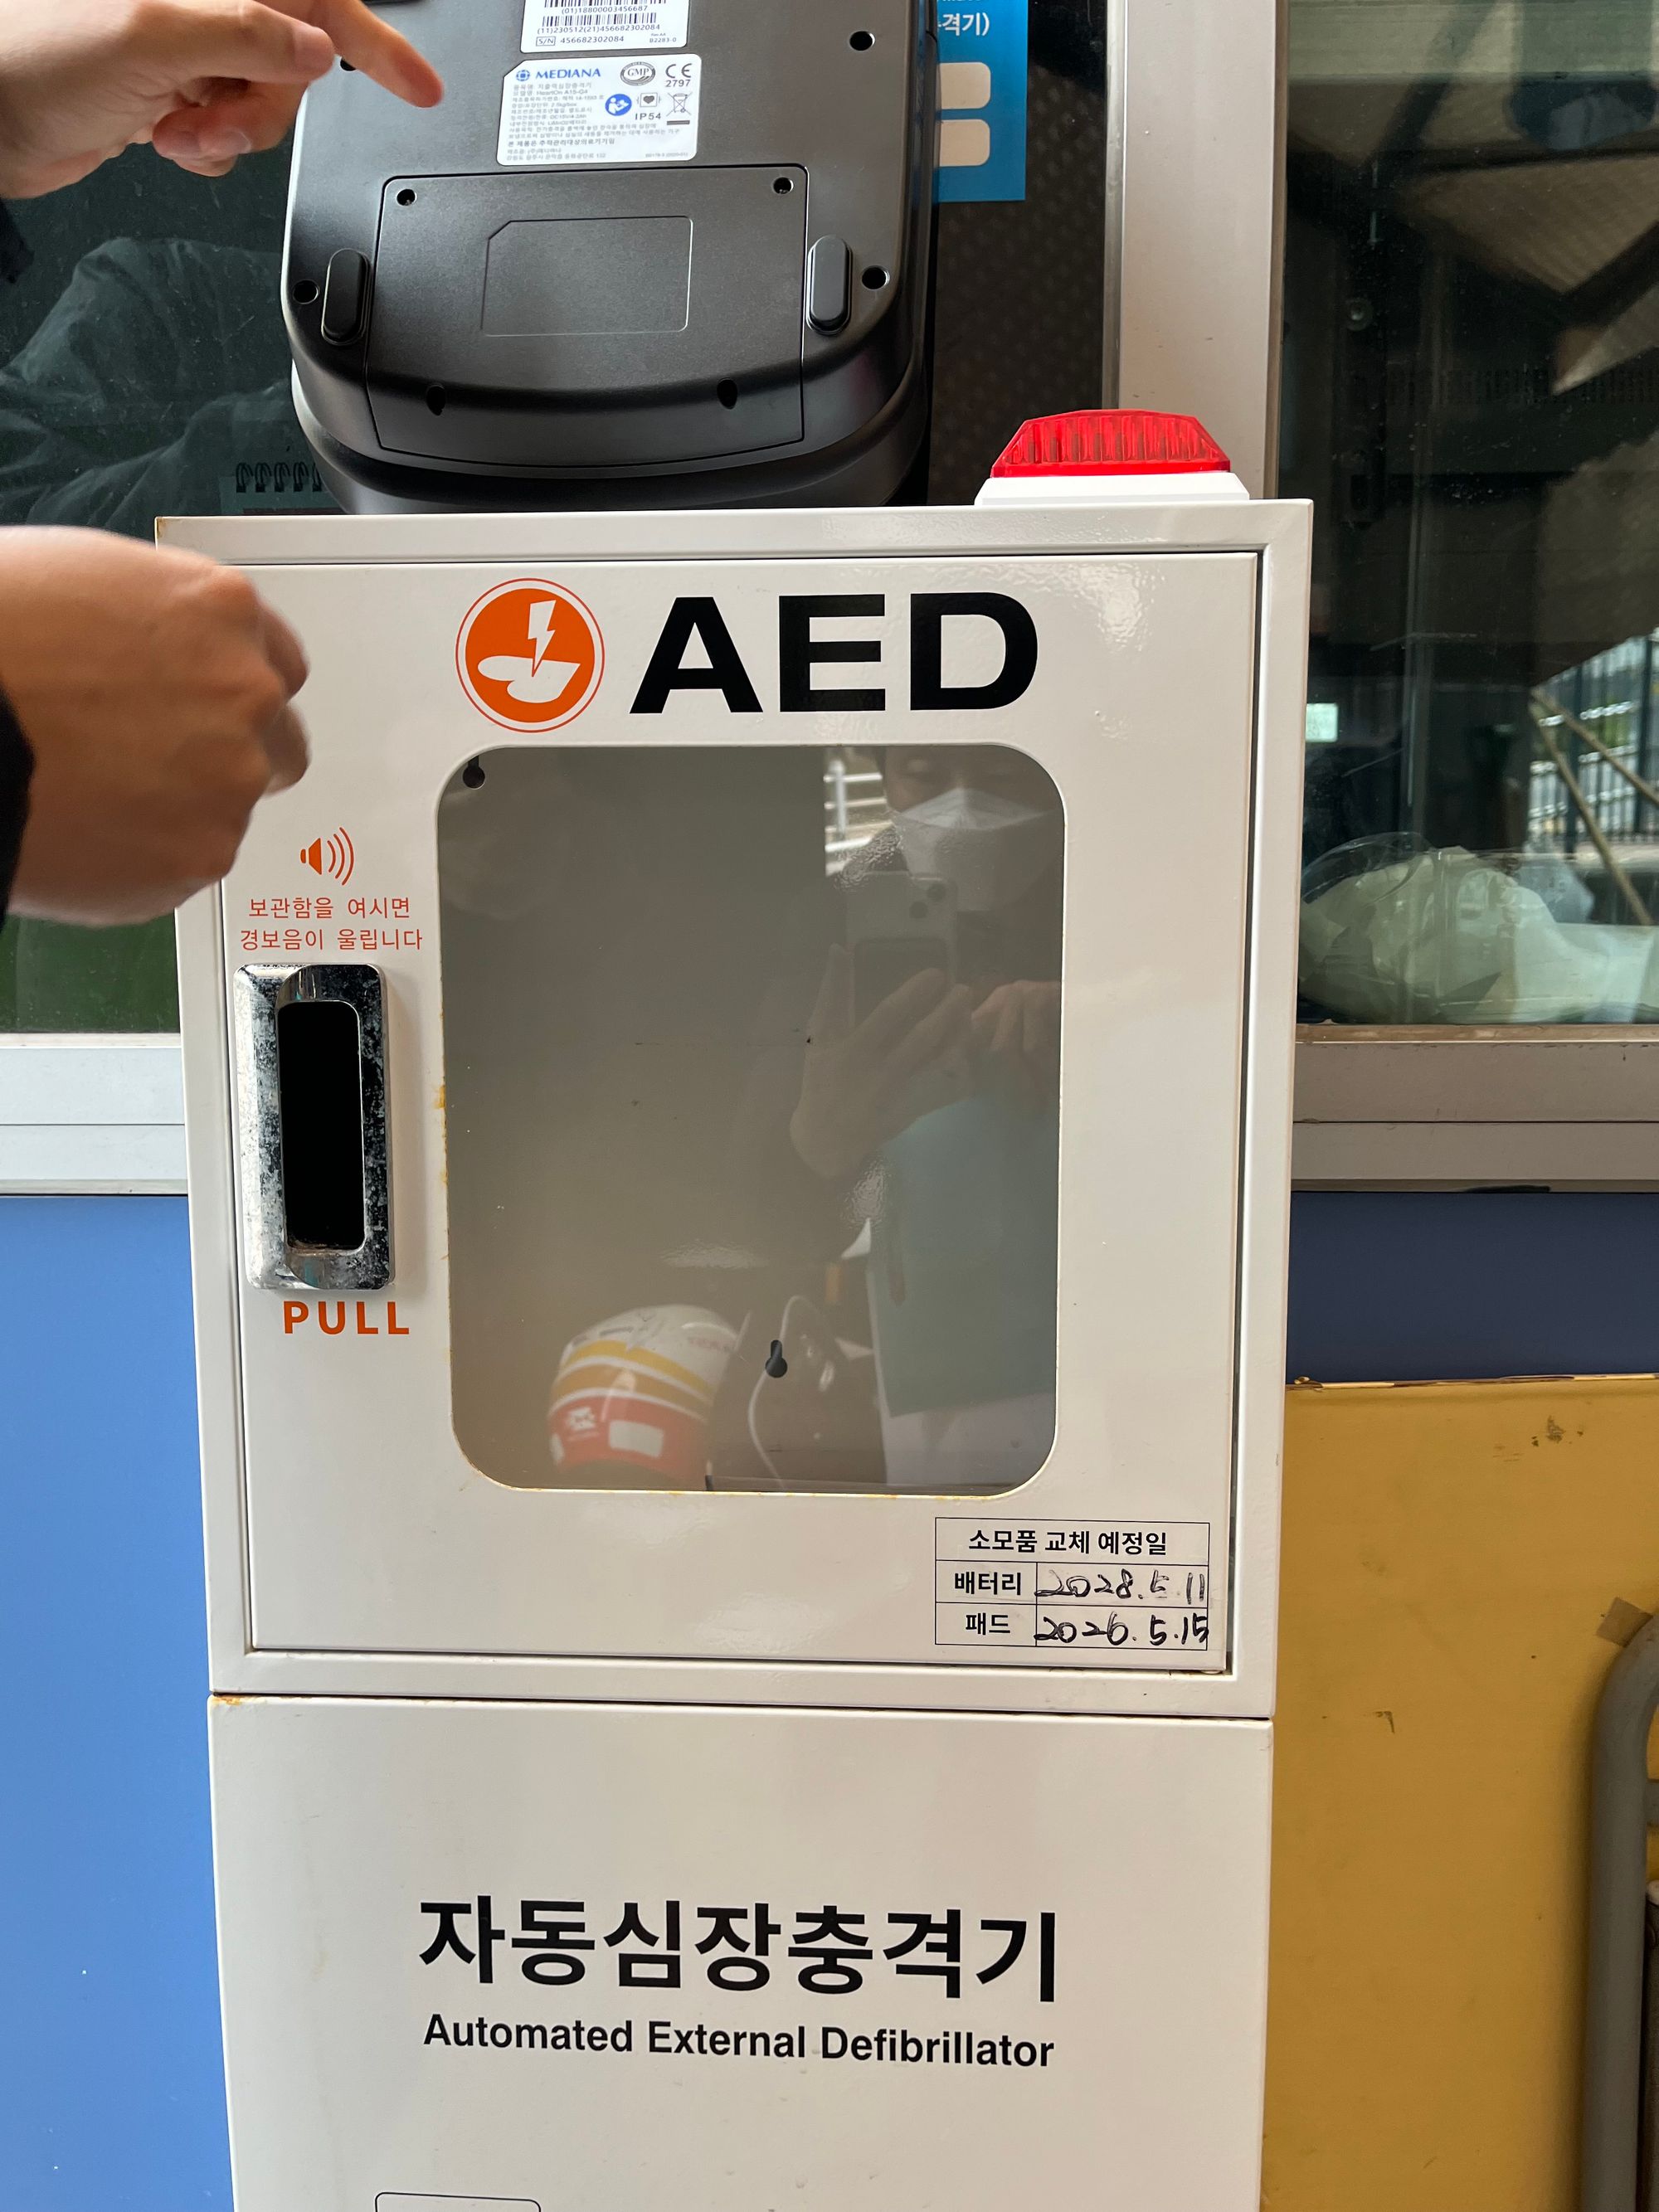 🫀 생명의 골든타임 지킬 AED, 광주에서 관리 문제 '빨간불'